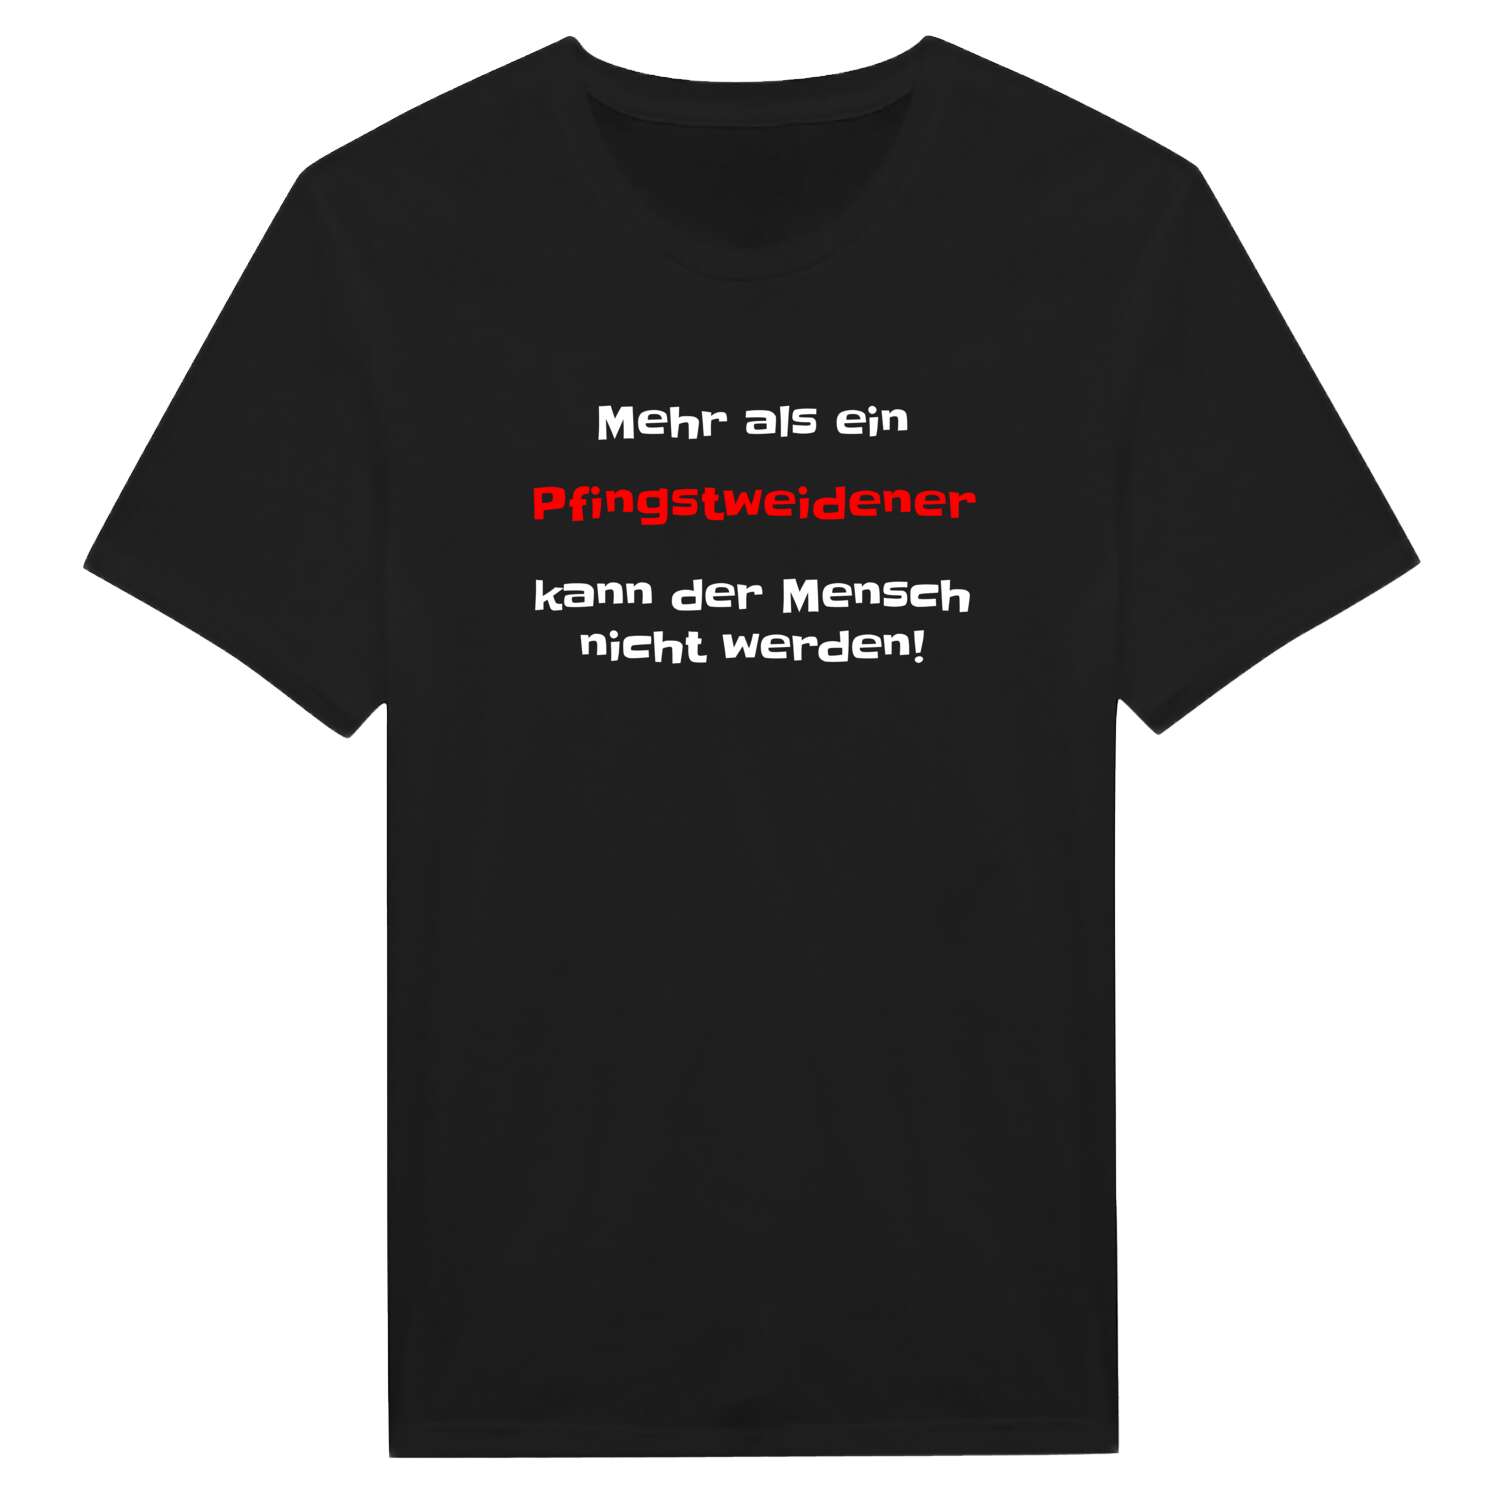 Pfingstweide T-Shirt »Mehr als ein«